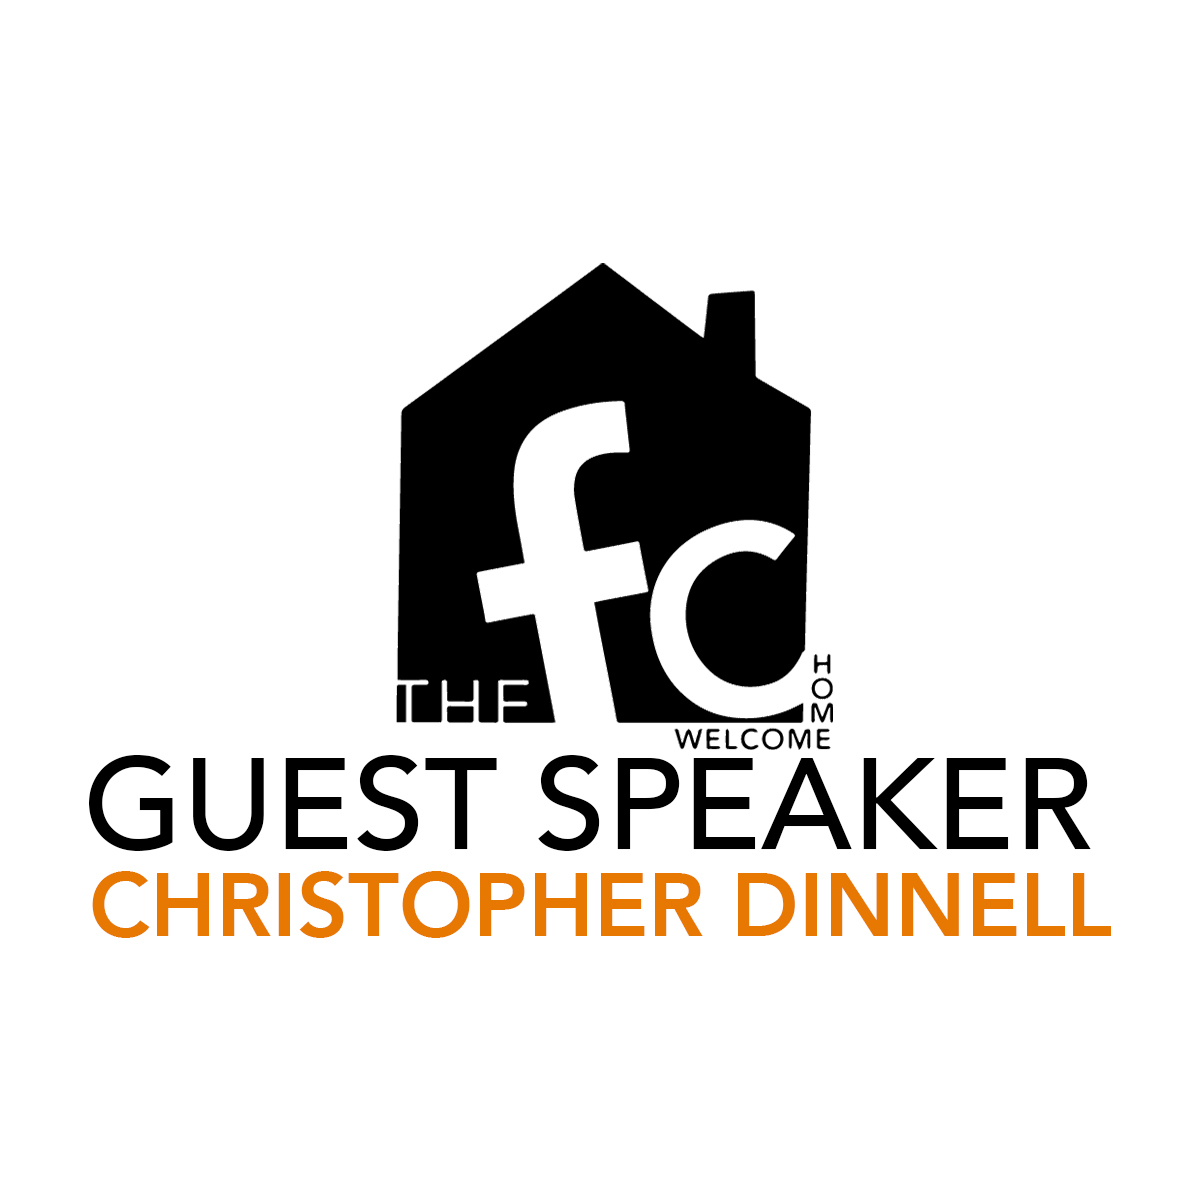 Guest Speaker Christopher Dinnell 11.13.16